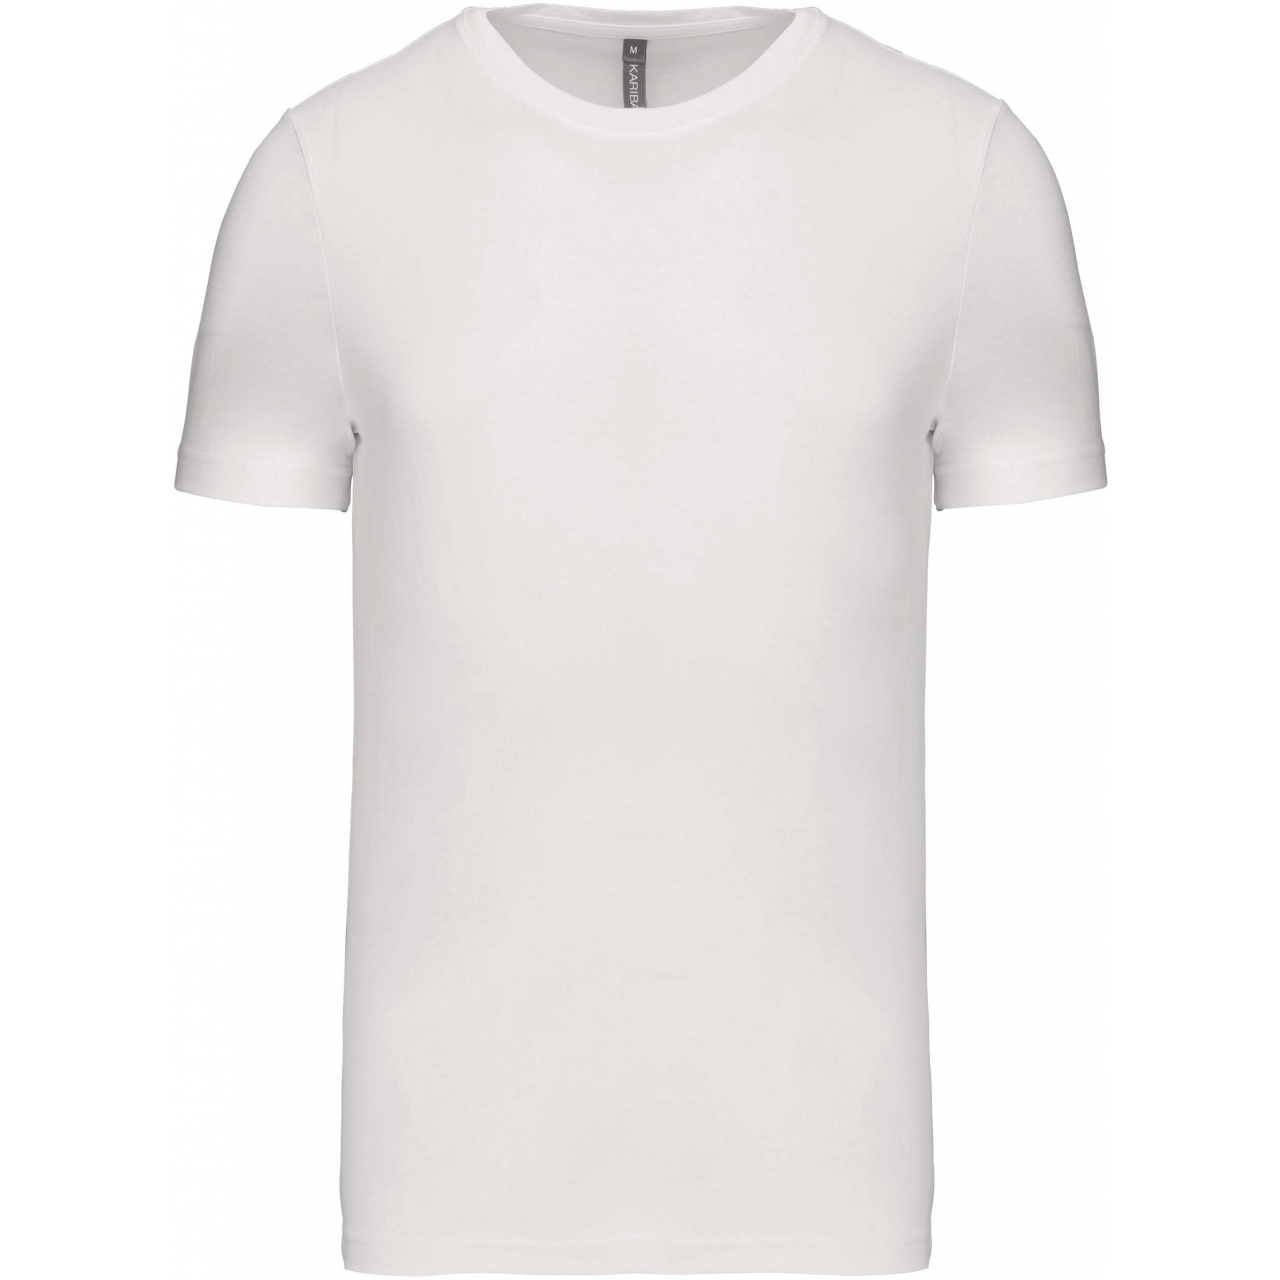 Pánské tričko Kariban krátký rukáv - bílé, S